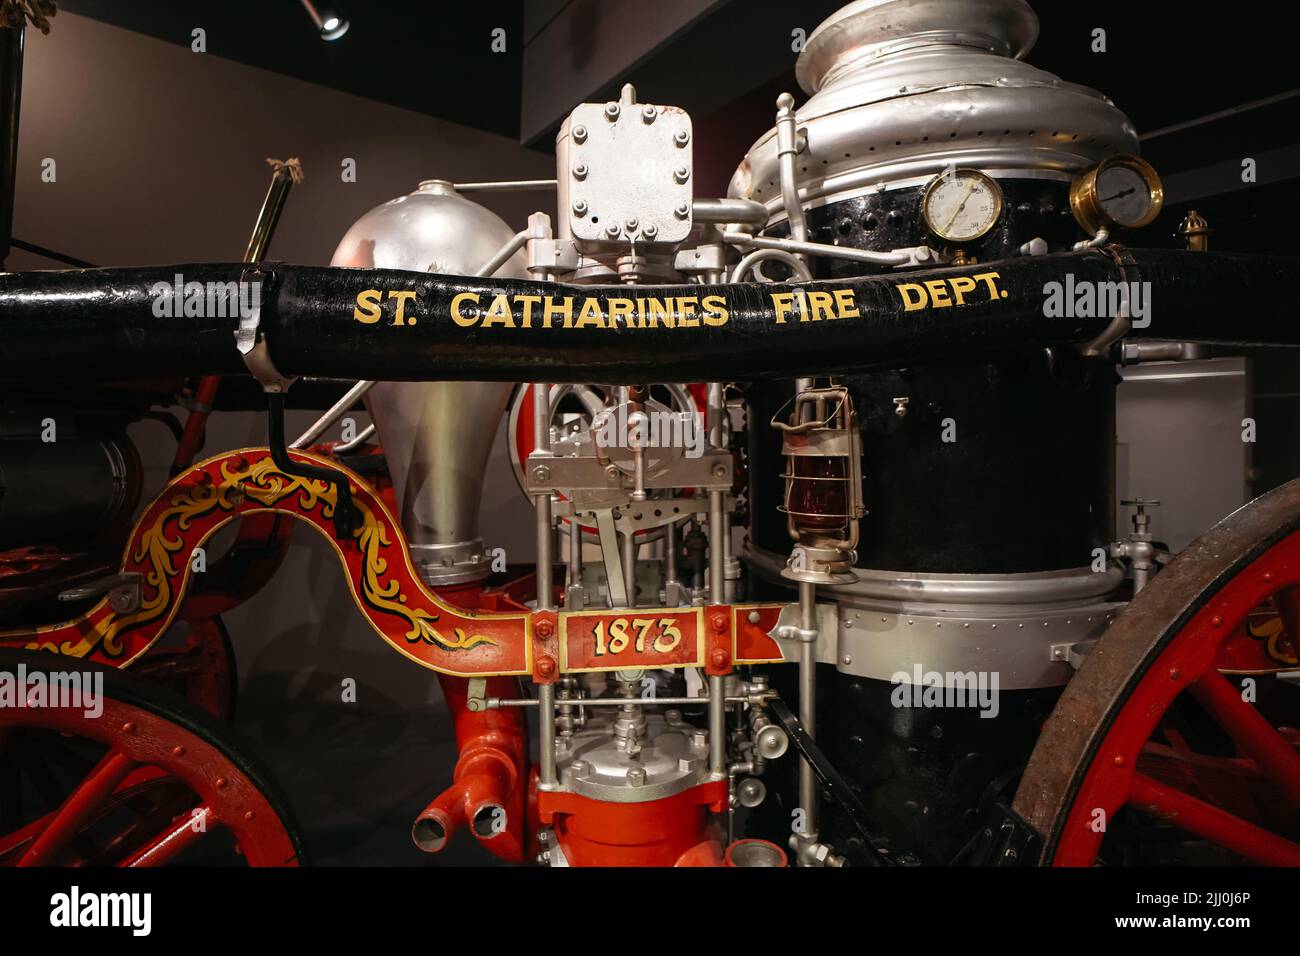 Un camion d'incendie d'époque exposé au musée St Catharine, Ontario, Canada Banque D'Images